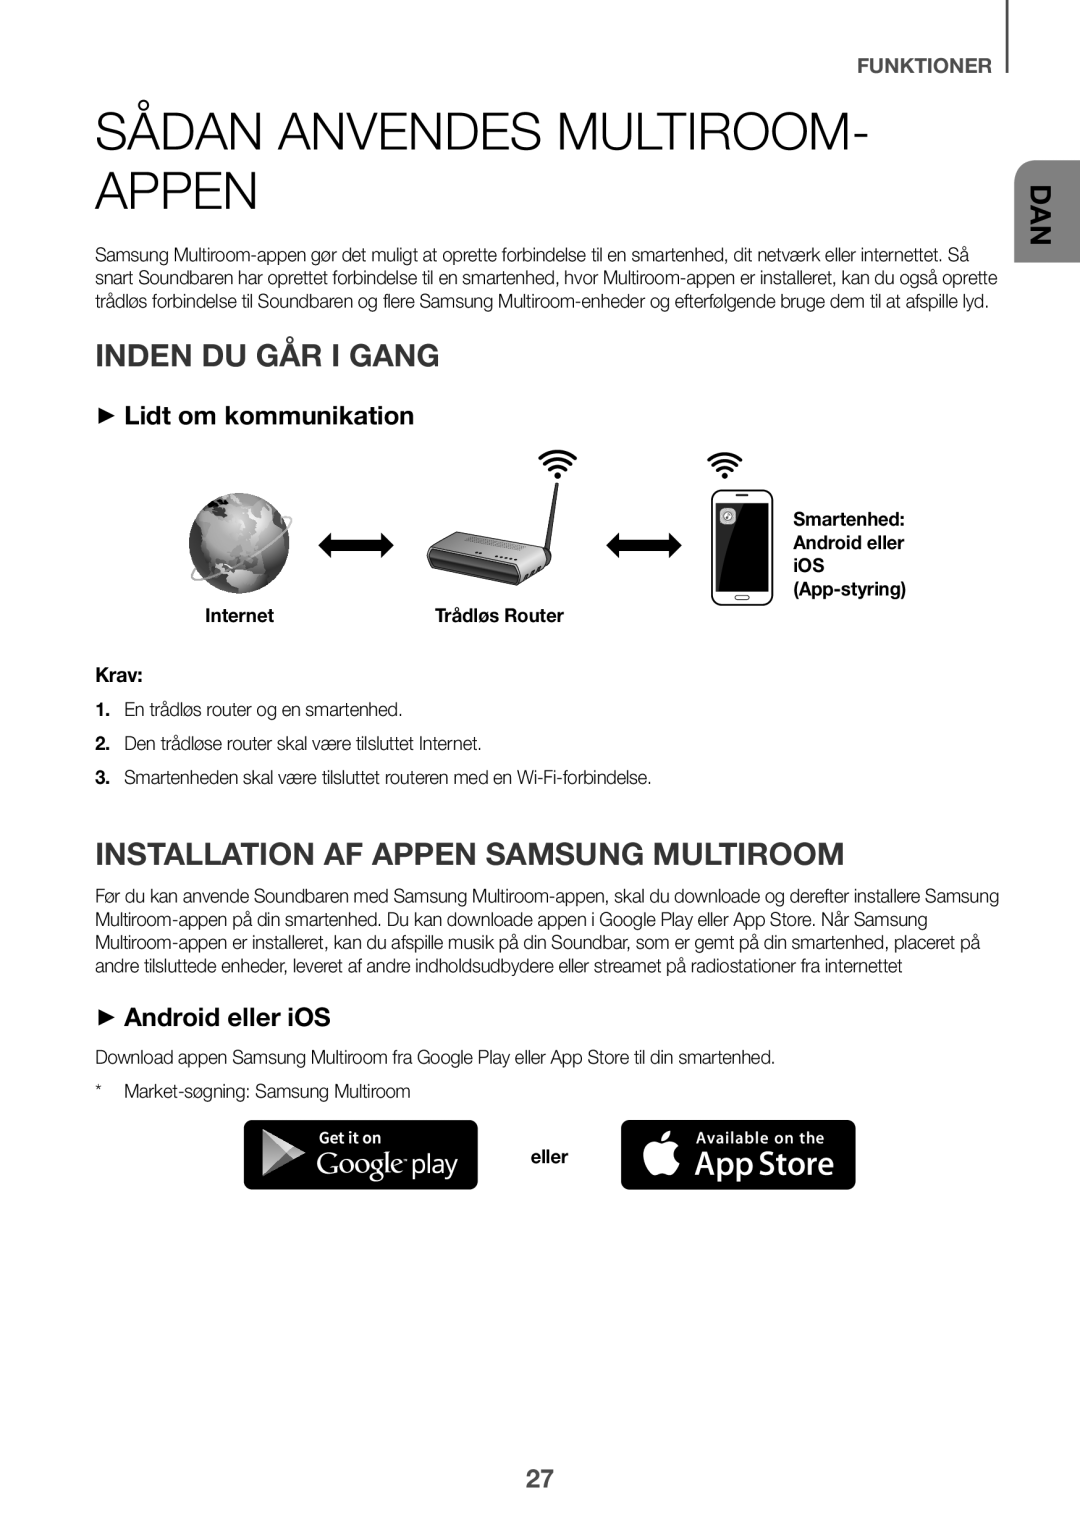 Samsung HW-K651/XN Sådan anvendes Multiroom- appen, Inden du går i gang, Installation af appen Samsung Multiroom, Internet 